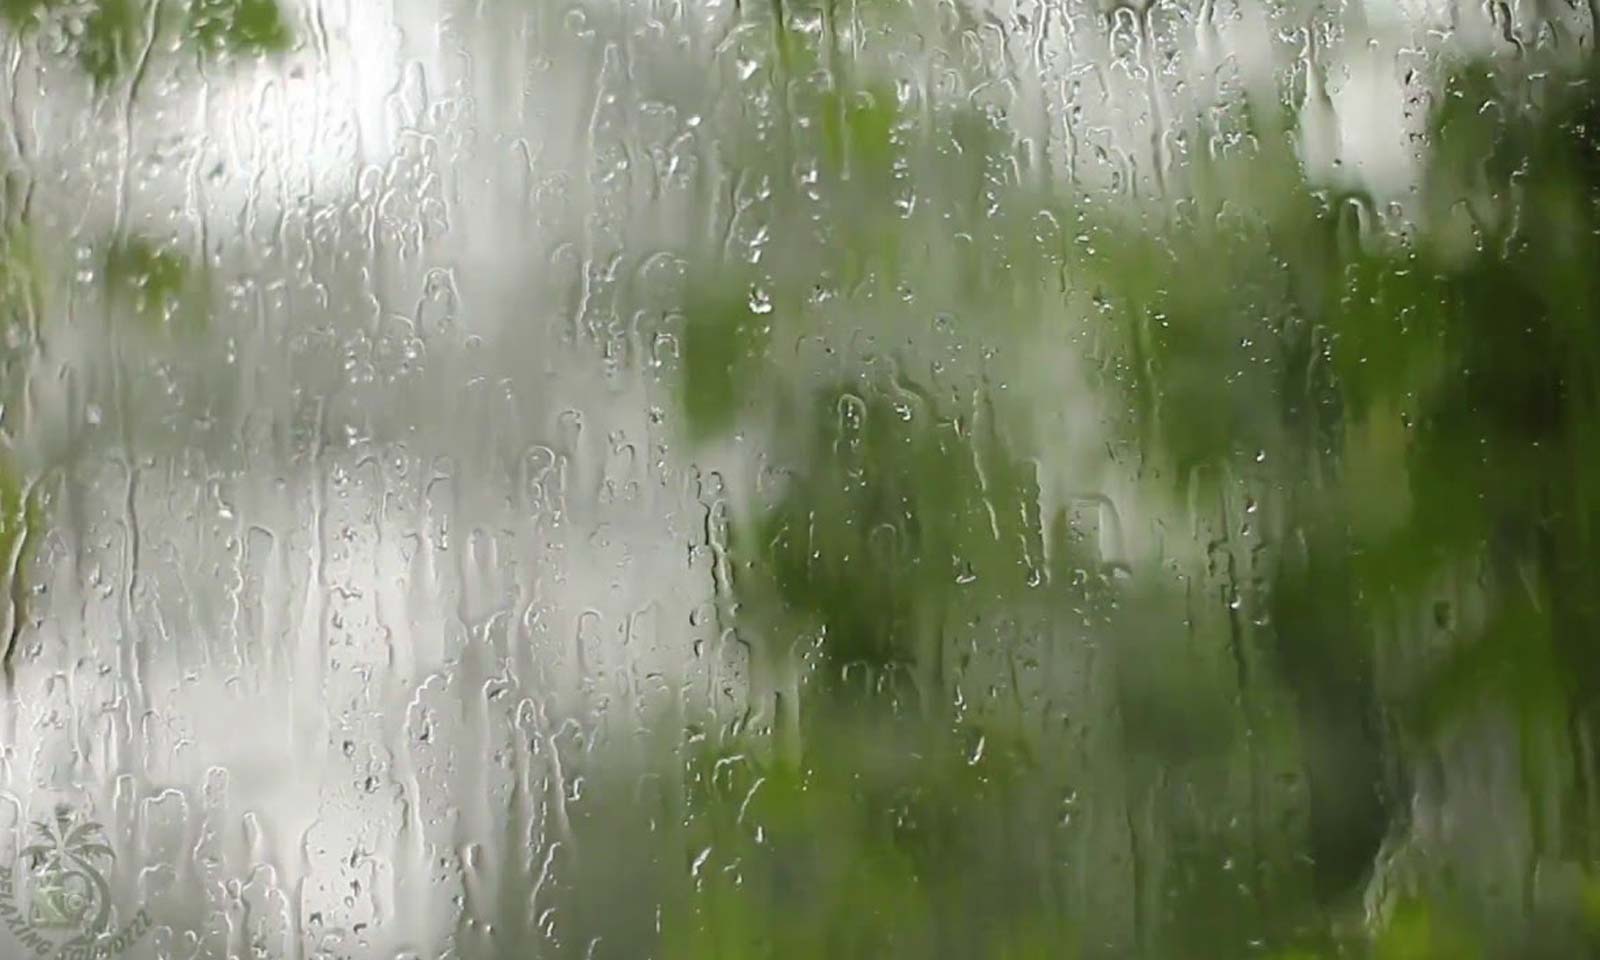 Дождь ис. Дождь в окне. Природа дождь. Дождливый фон. Дождь на стекле.